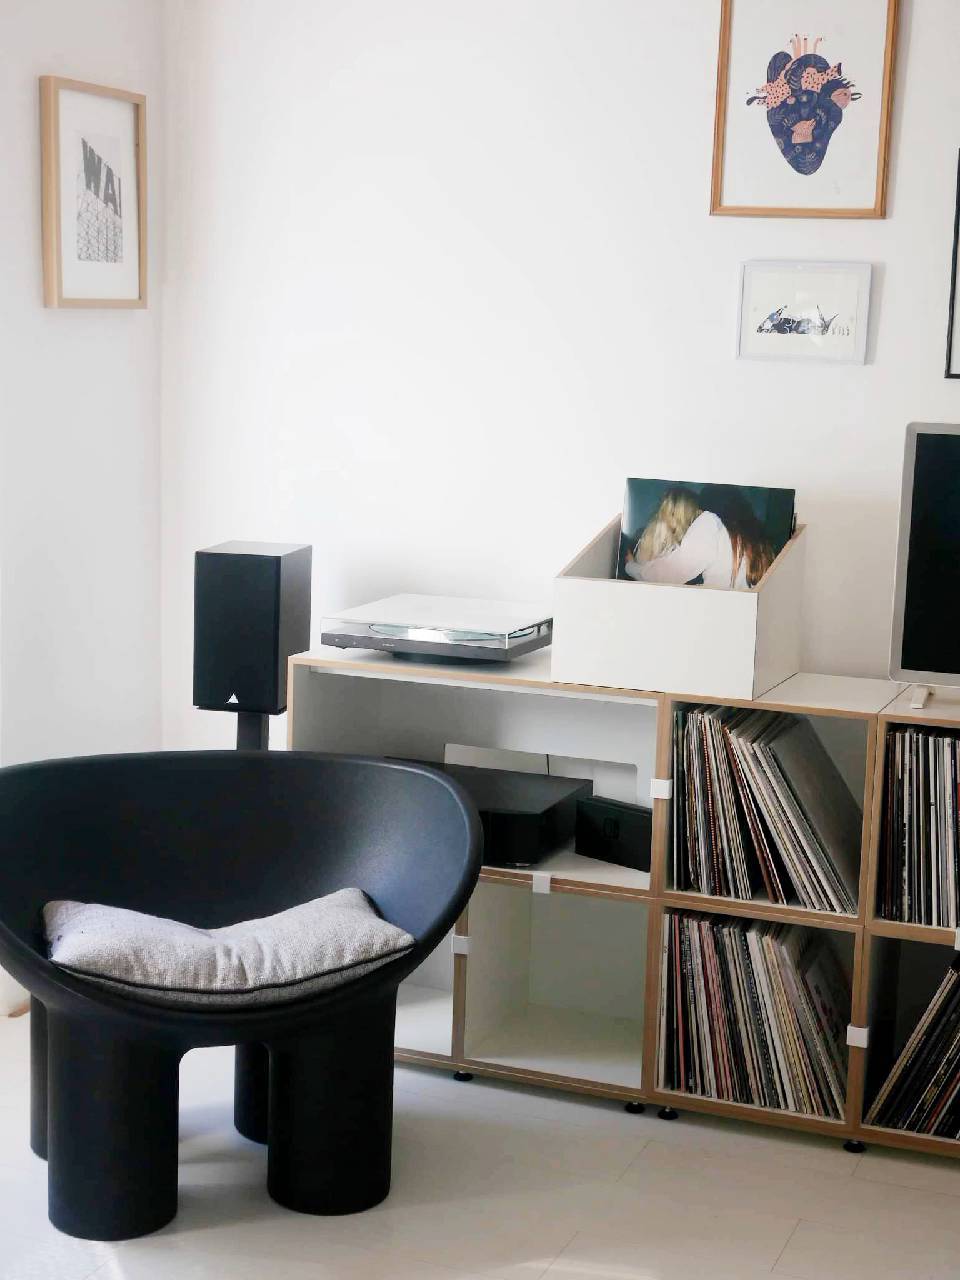 J'ai longtemps cherché le meuble parfait pour accueillir notre collection de vinyles, c'est chose faite avec le système @stocubo. 

Je vous le présente dans mon premier réel avec bébé Popcorn et Lemmy en guest star ! 😉

#stocubo #recordcollection #interiordecor #shelfsystem #shelfie #vinyl